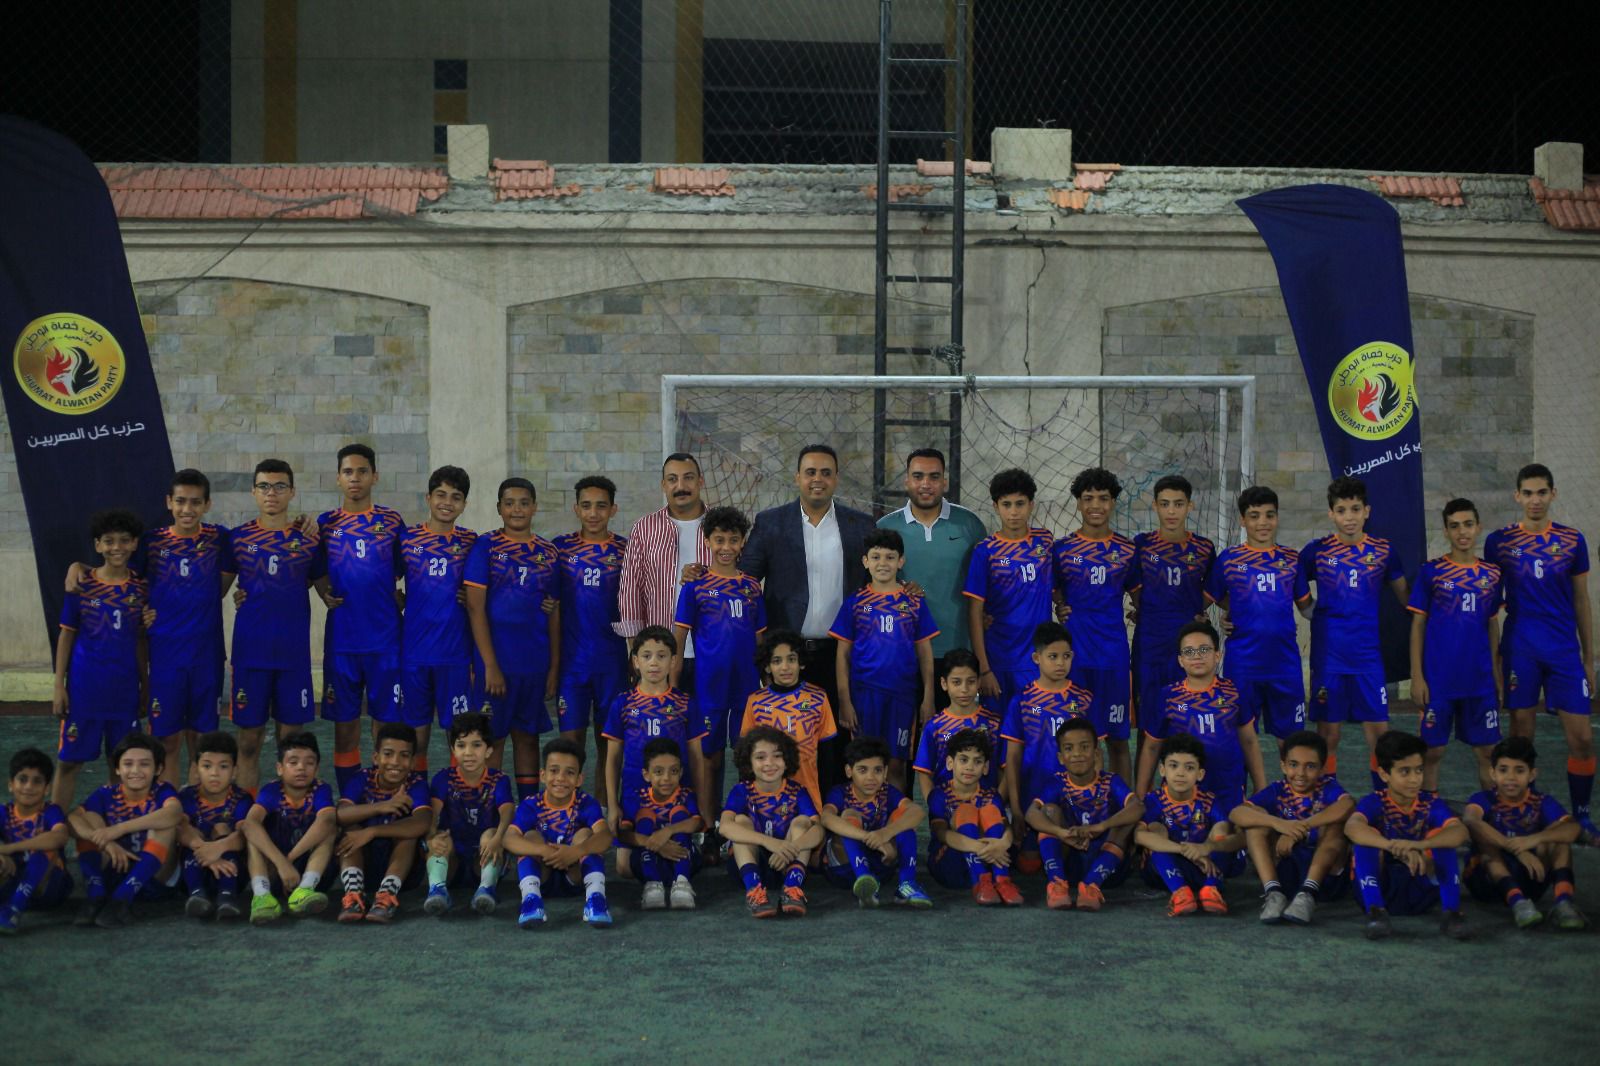 حزب حماة الوطن يفتتح فعالياته الصيفية بدورة لكرة القدم للأطفال في الإسكندرية